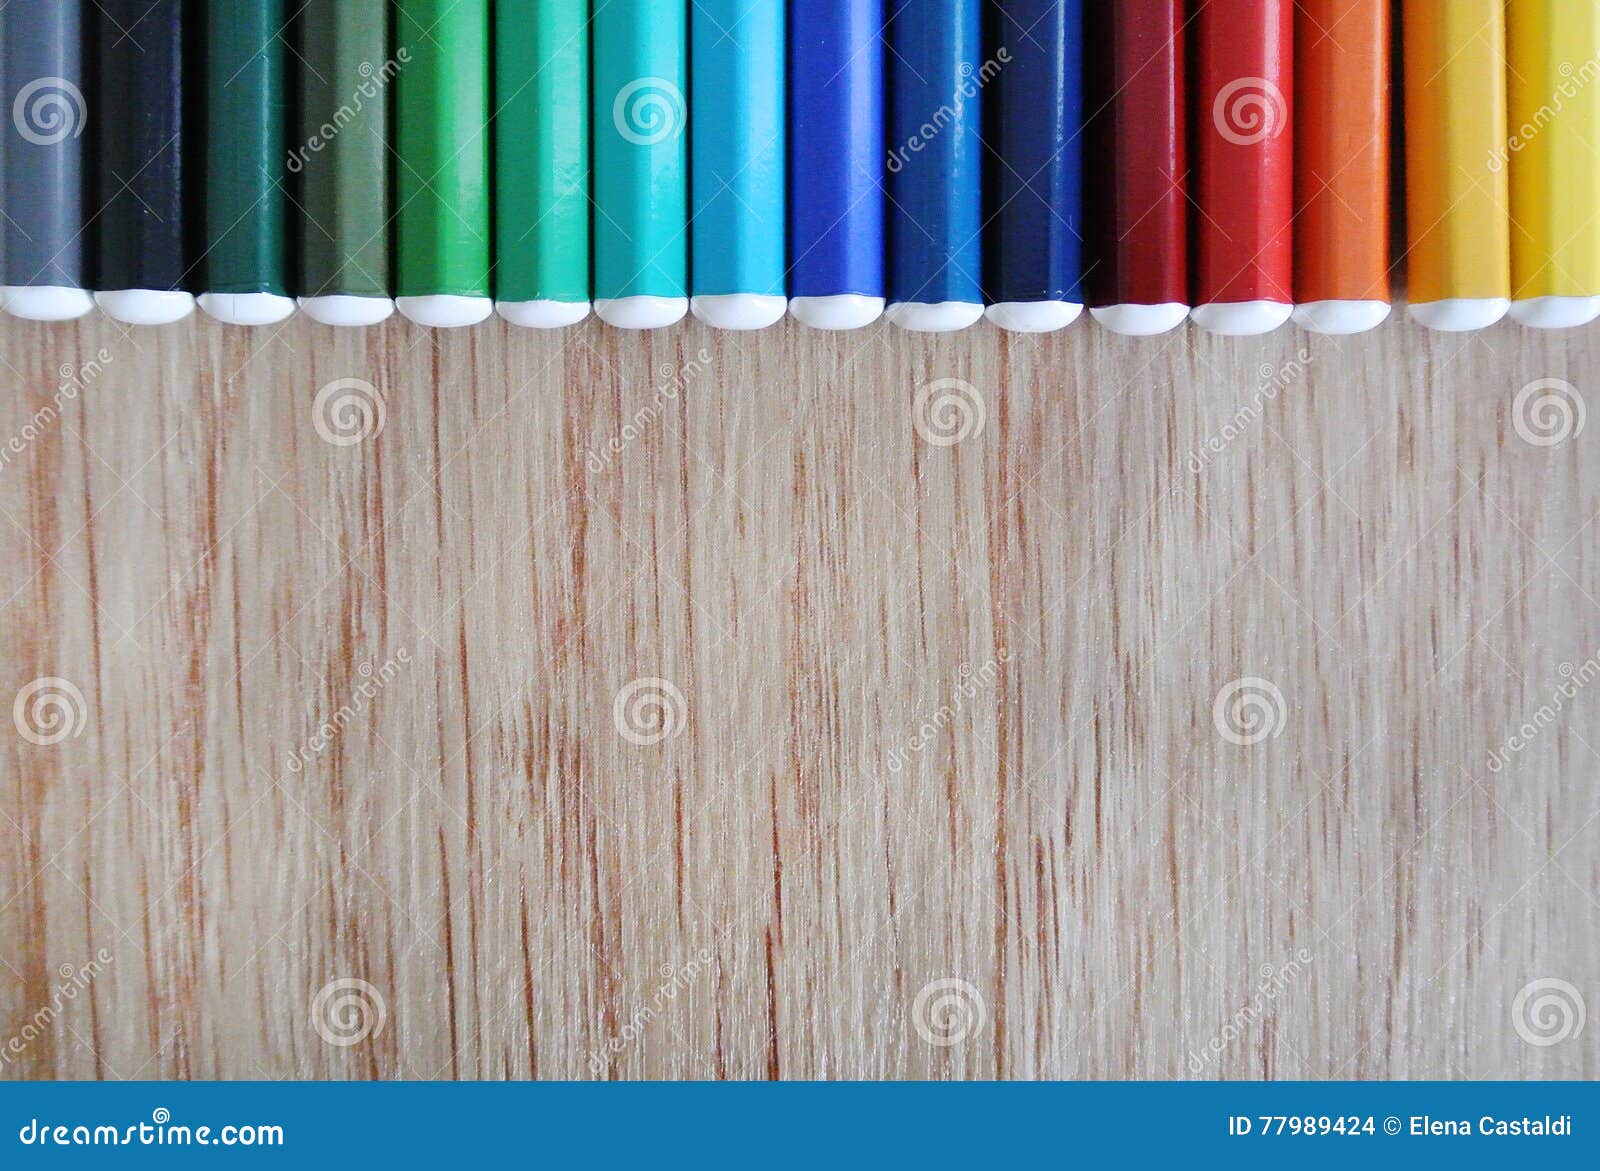 χρωματισμένα μολύβια. Τα χρωματισμένα διαταγμένα μολύβια καθορισμένα